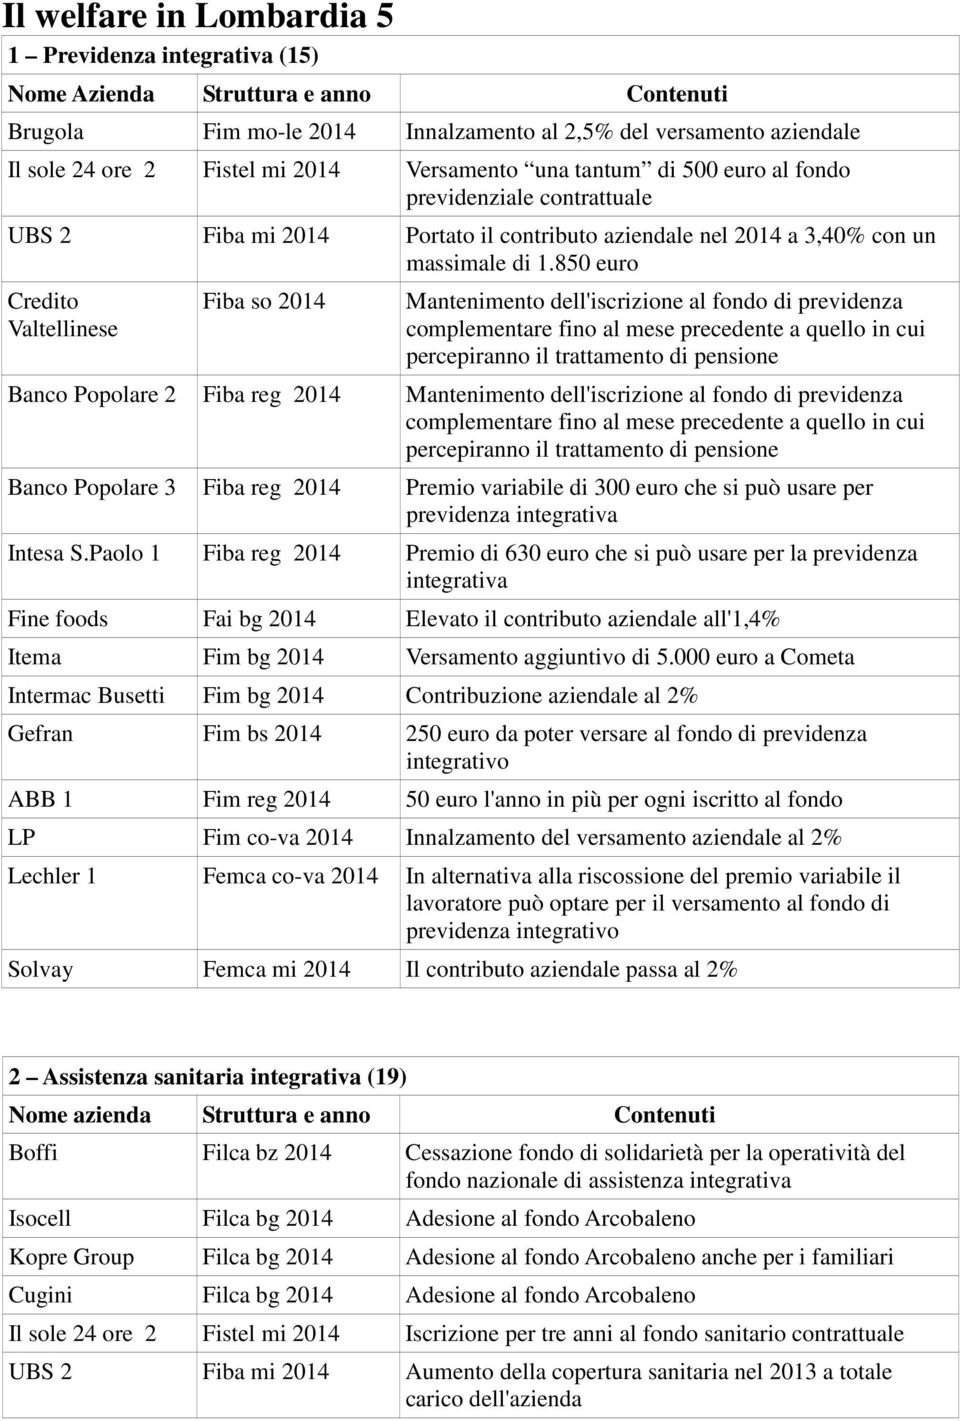 850 euro Credito Valtellinese Fiba so 2014 Mantenimento dell'iscrizione al fondo di previdenza complementare fino al mese precedente a quello in cui percepiranno il trattamento di pensione Banco